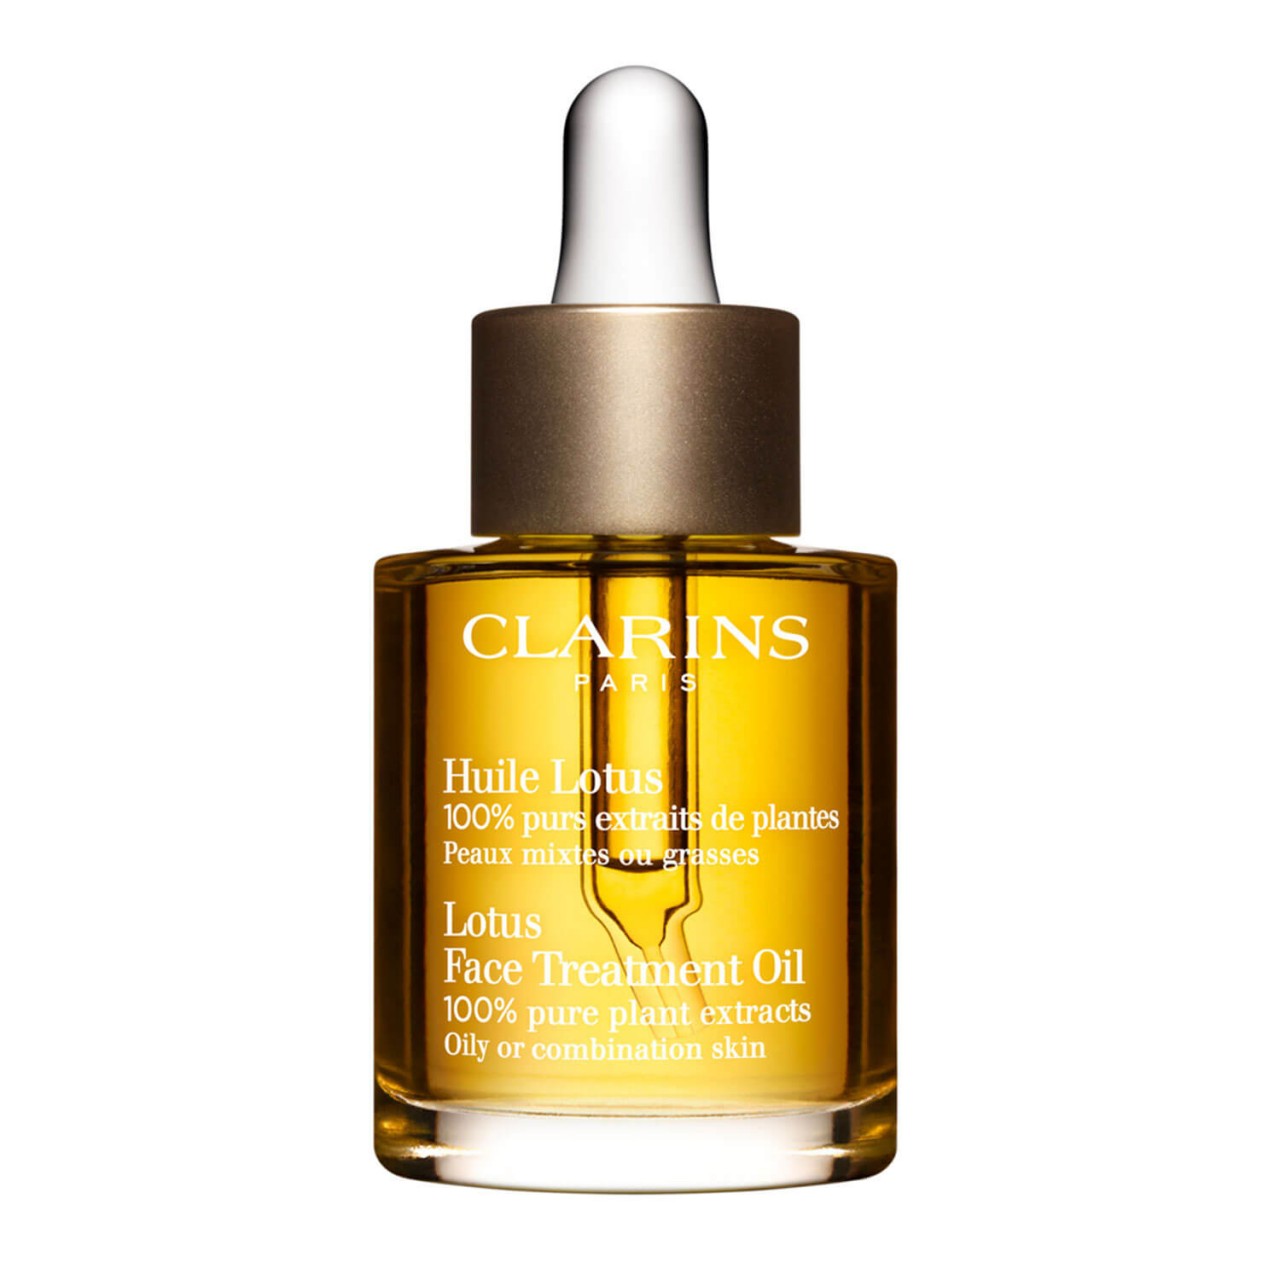 Clarins Skin - Lotus Face Treatment Oil von Clarins